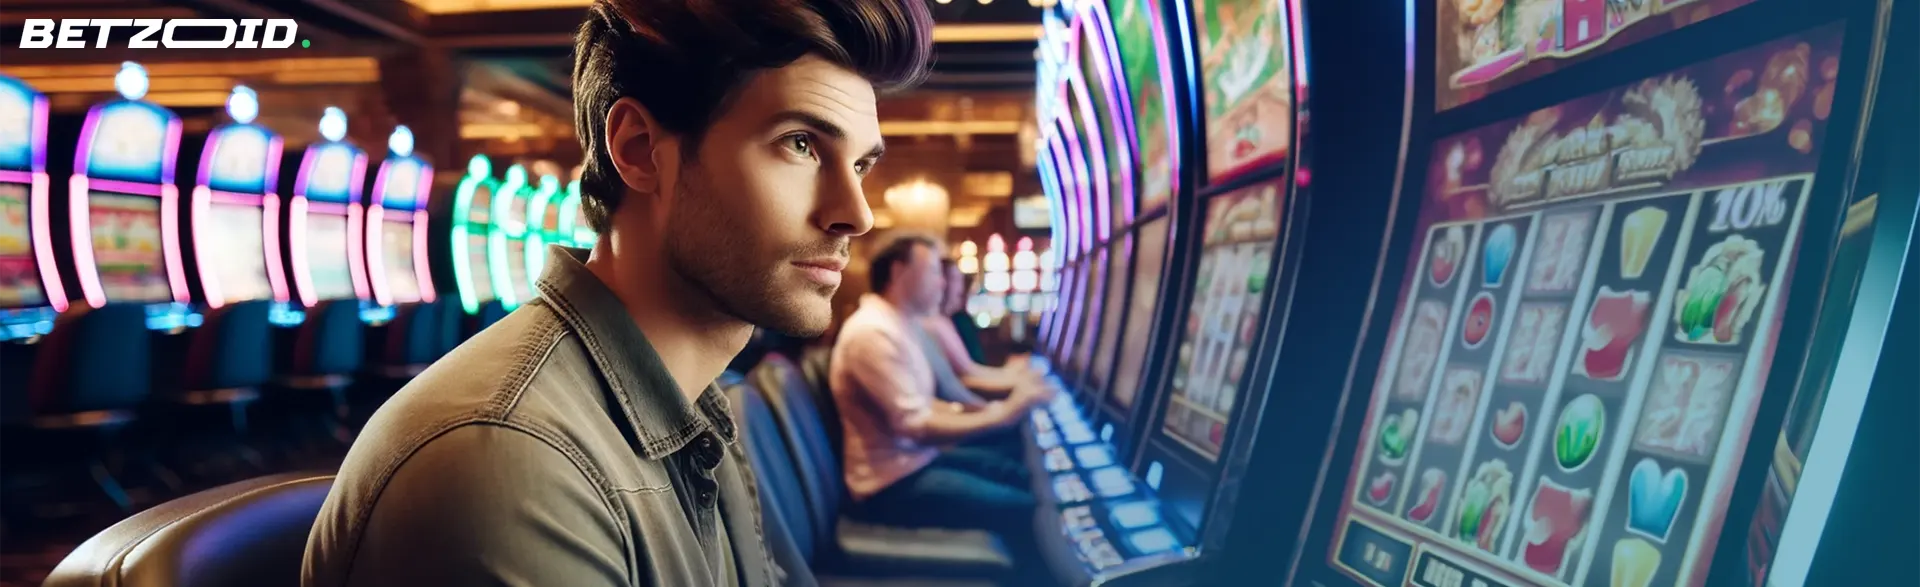 Man playing slot machines at $300 no deposit signup bonus casinos.